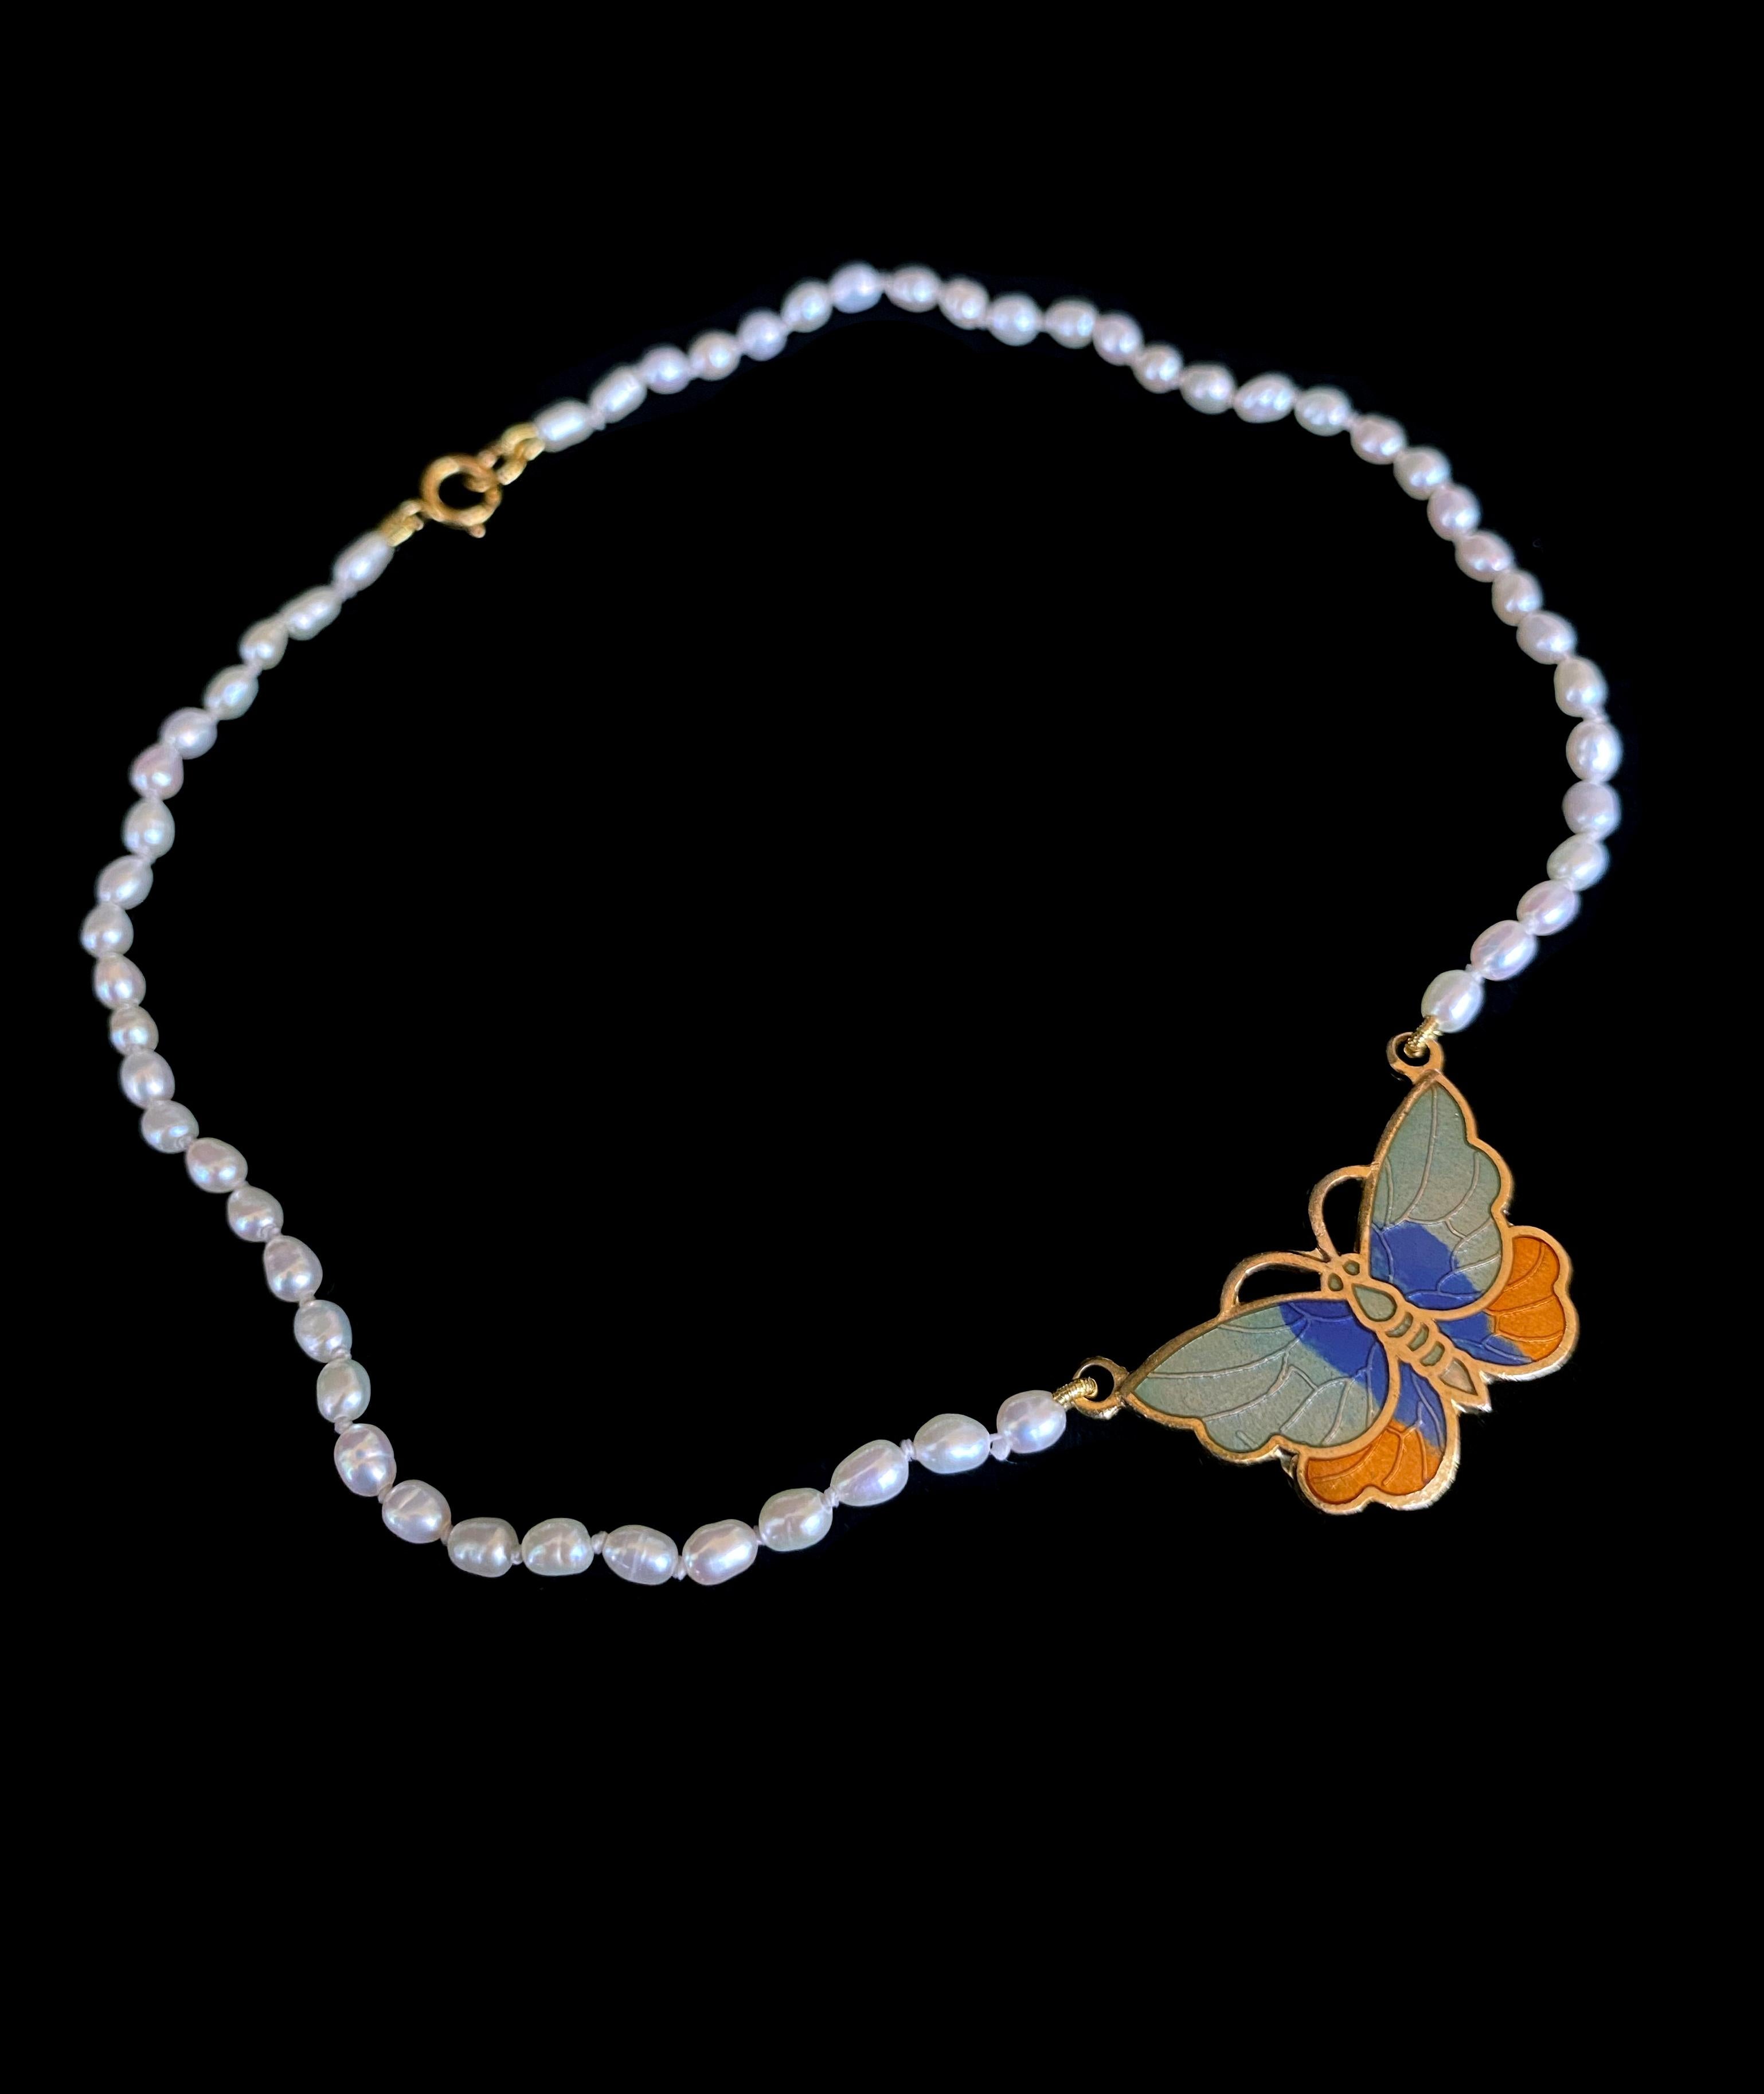 Collier de perles simple et classique pour la petite personne aimée de votre vie, par Marina J. Ce collier est orné d'un pendentif fantaisiste en plaqué or en forme de papillon en émail aqua, bleu et orange, qui en constitue la pièce maîtresse. Le